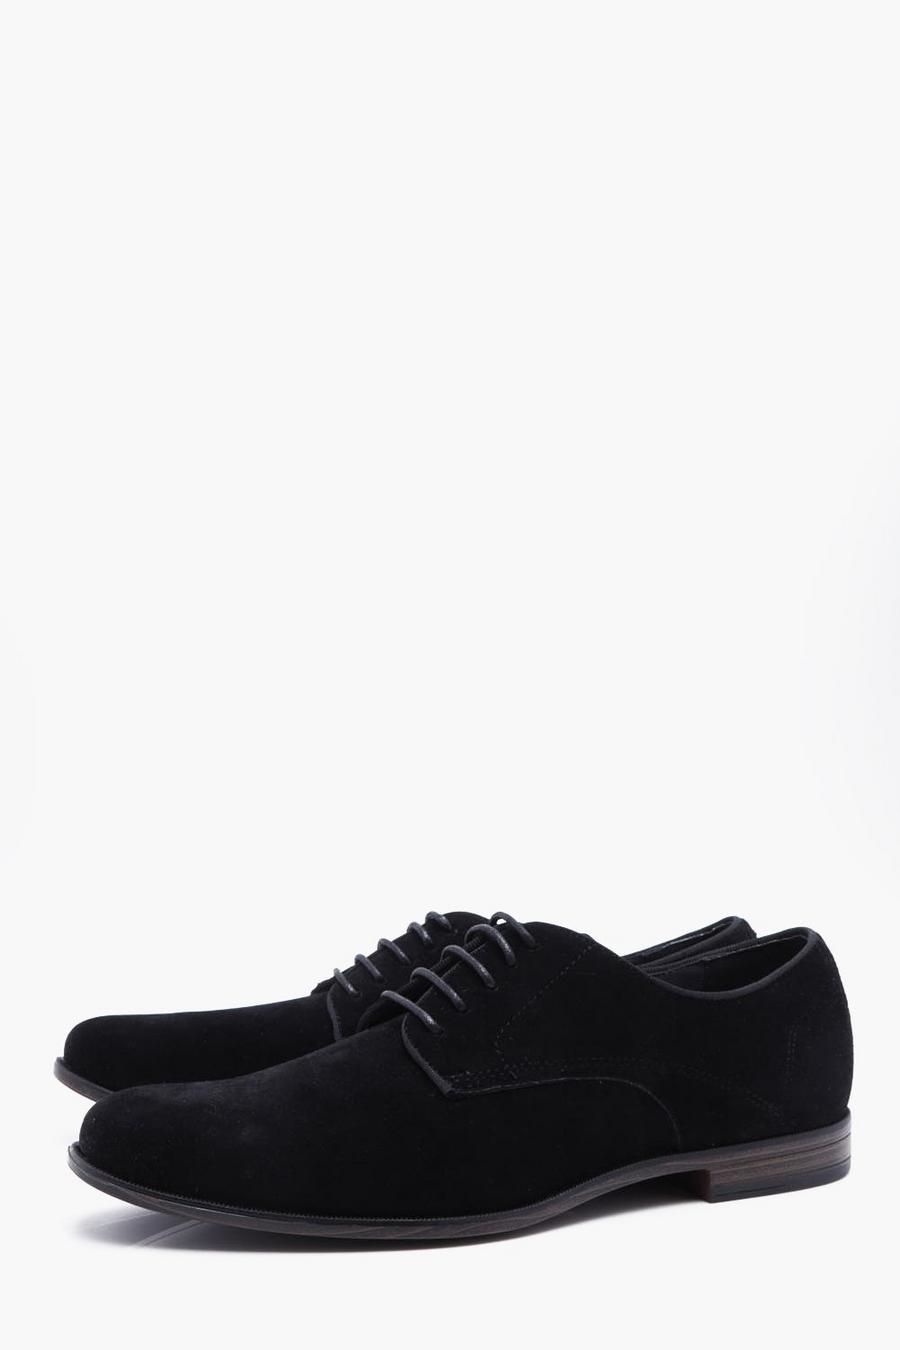 נעלי דרבי דמויות זמש בצבע שחור